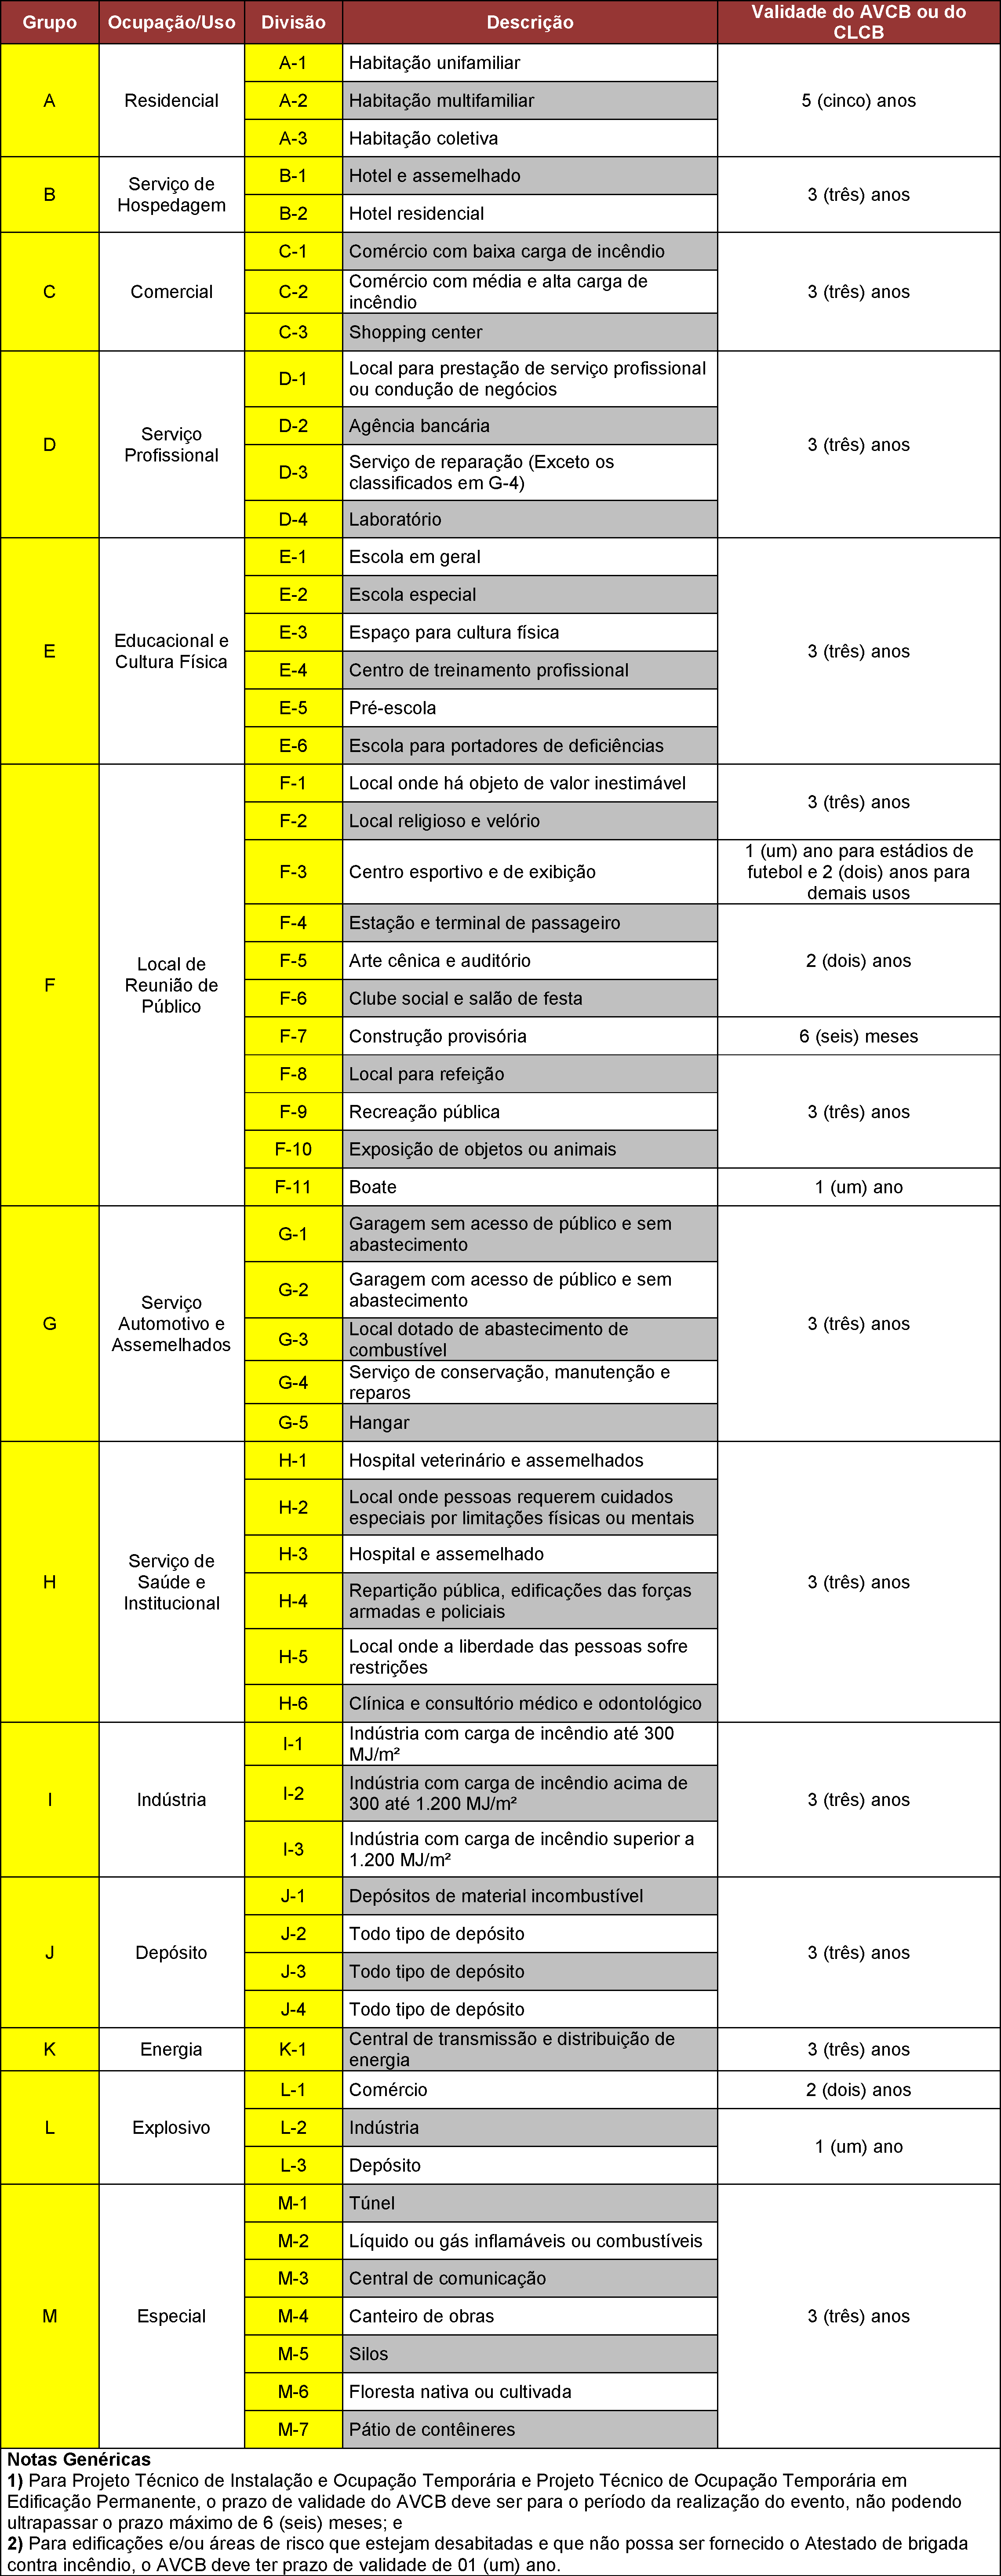 Anexo T: Tabela de prazos de validade das licenças emitidas pelo CBPMESP